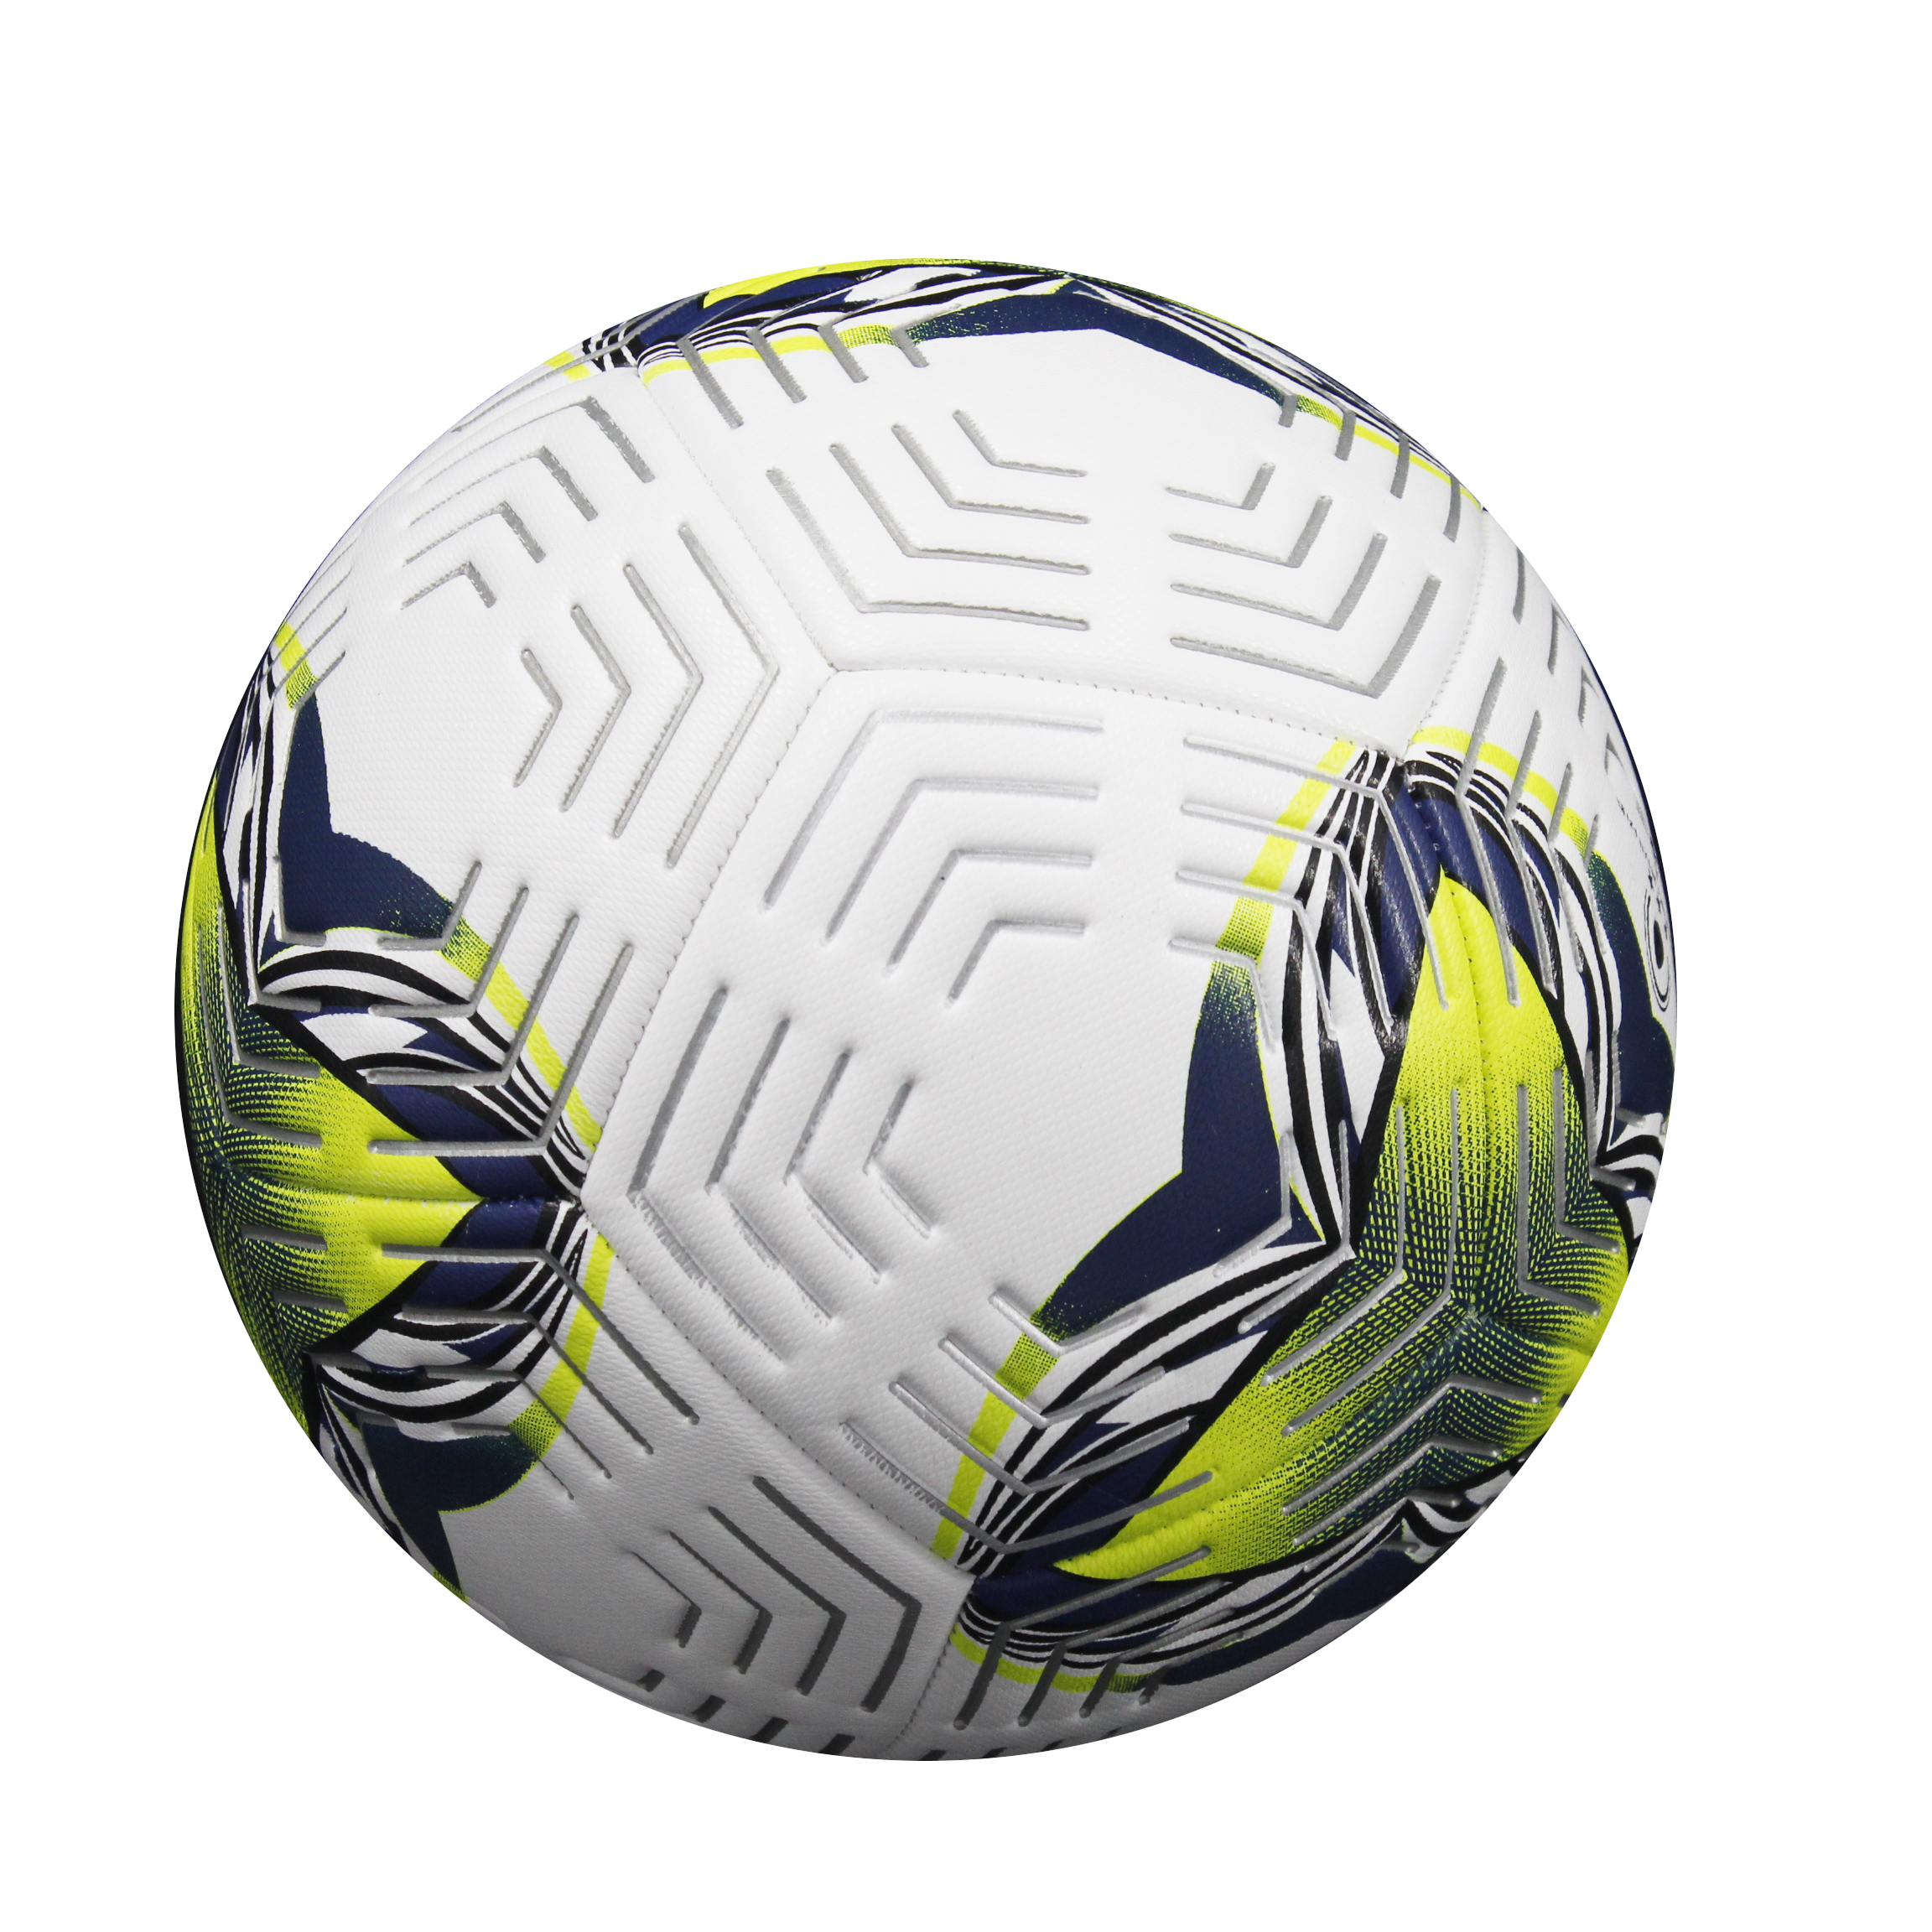 Entrenamiento de alta calidad a precio de fábrica para interiores y exteriores, tamaño estándar personalizado, balón de fútbol de Material PU 3/4/5 